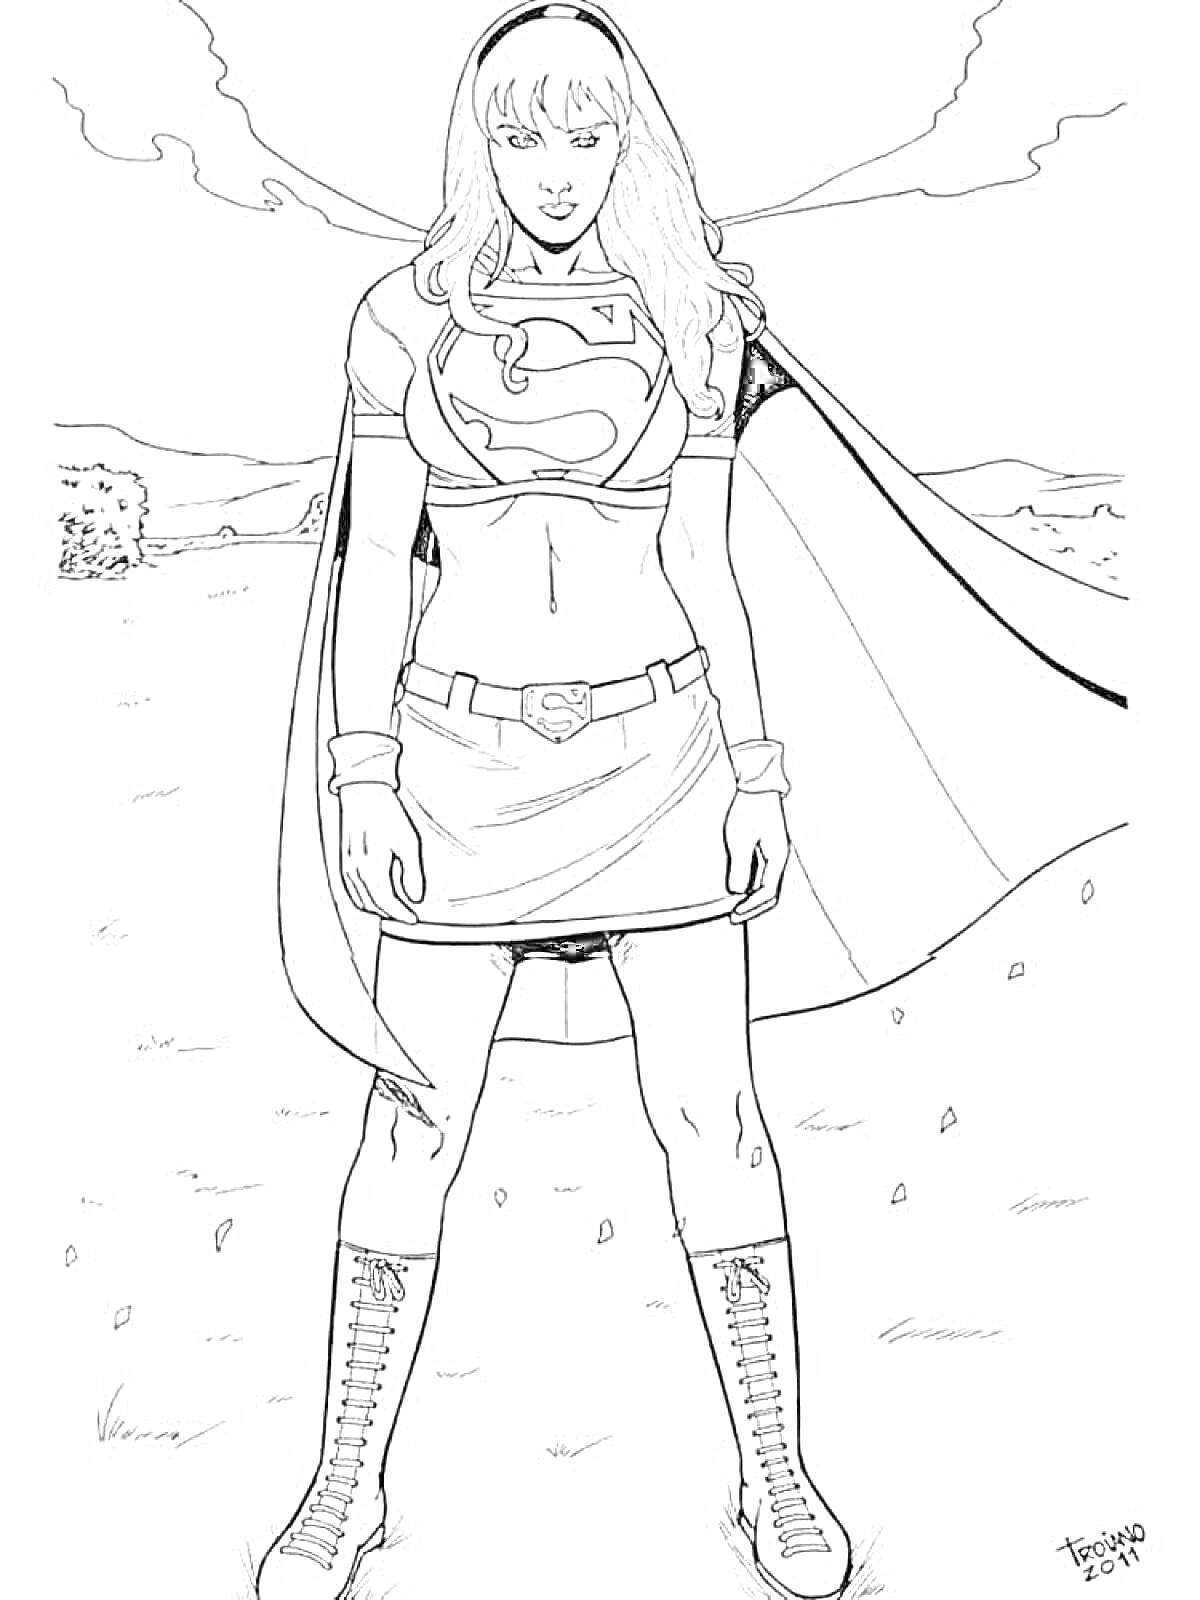 Раскраска Супергерл сcape и эмблема Супермена на груди в поле